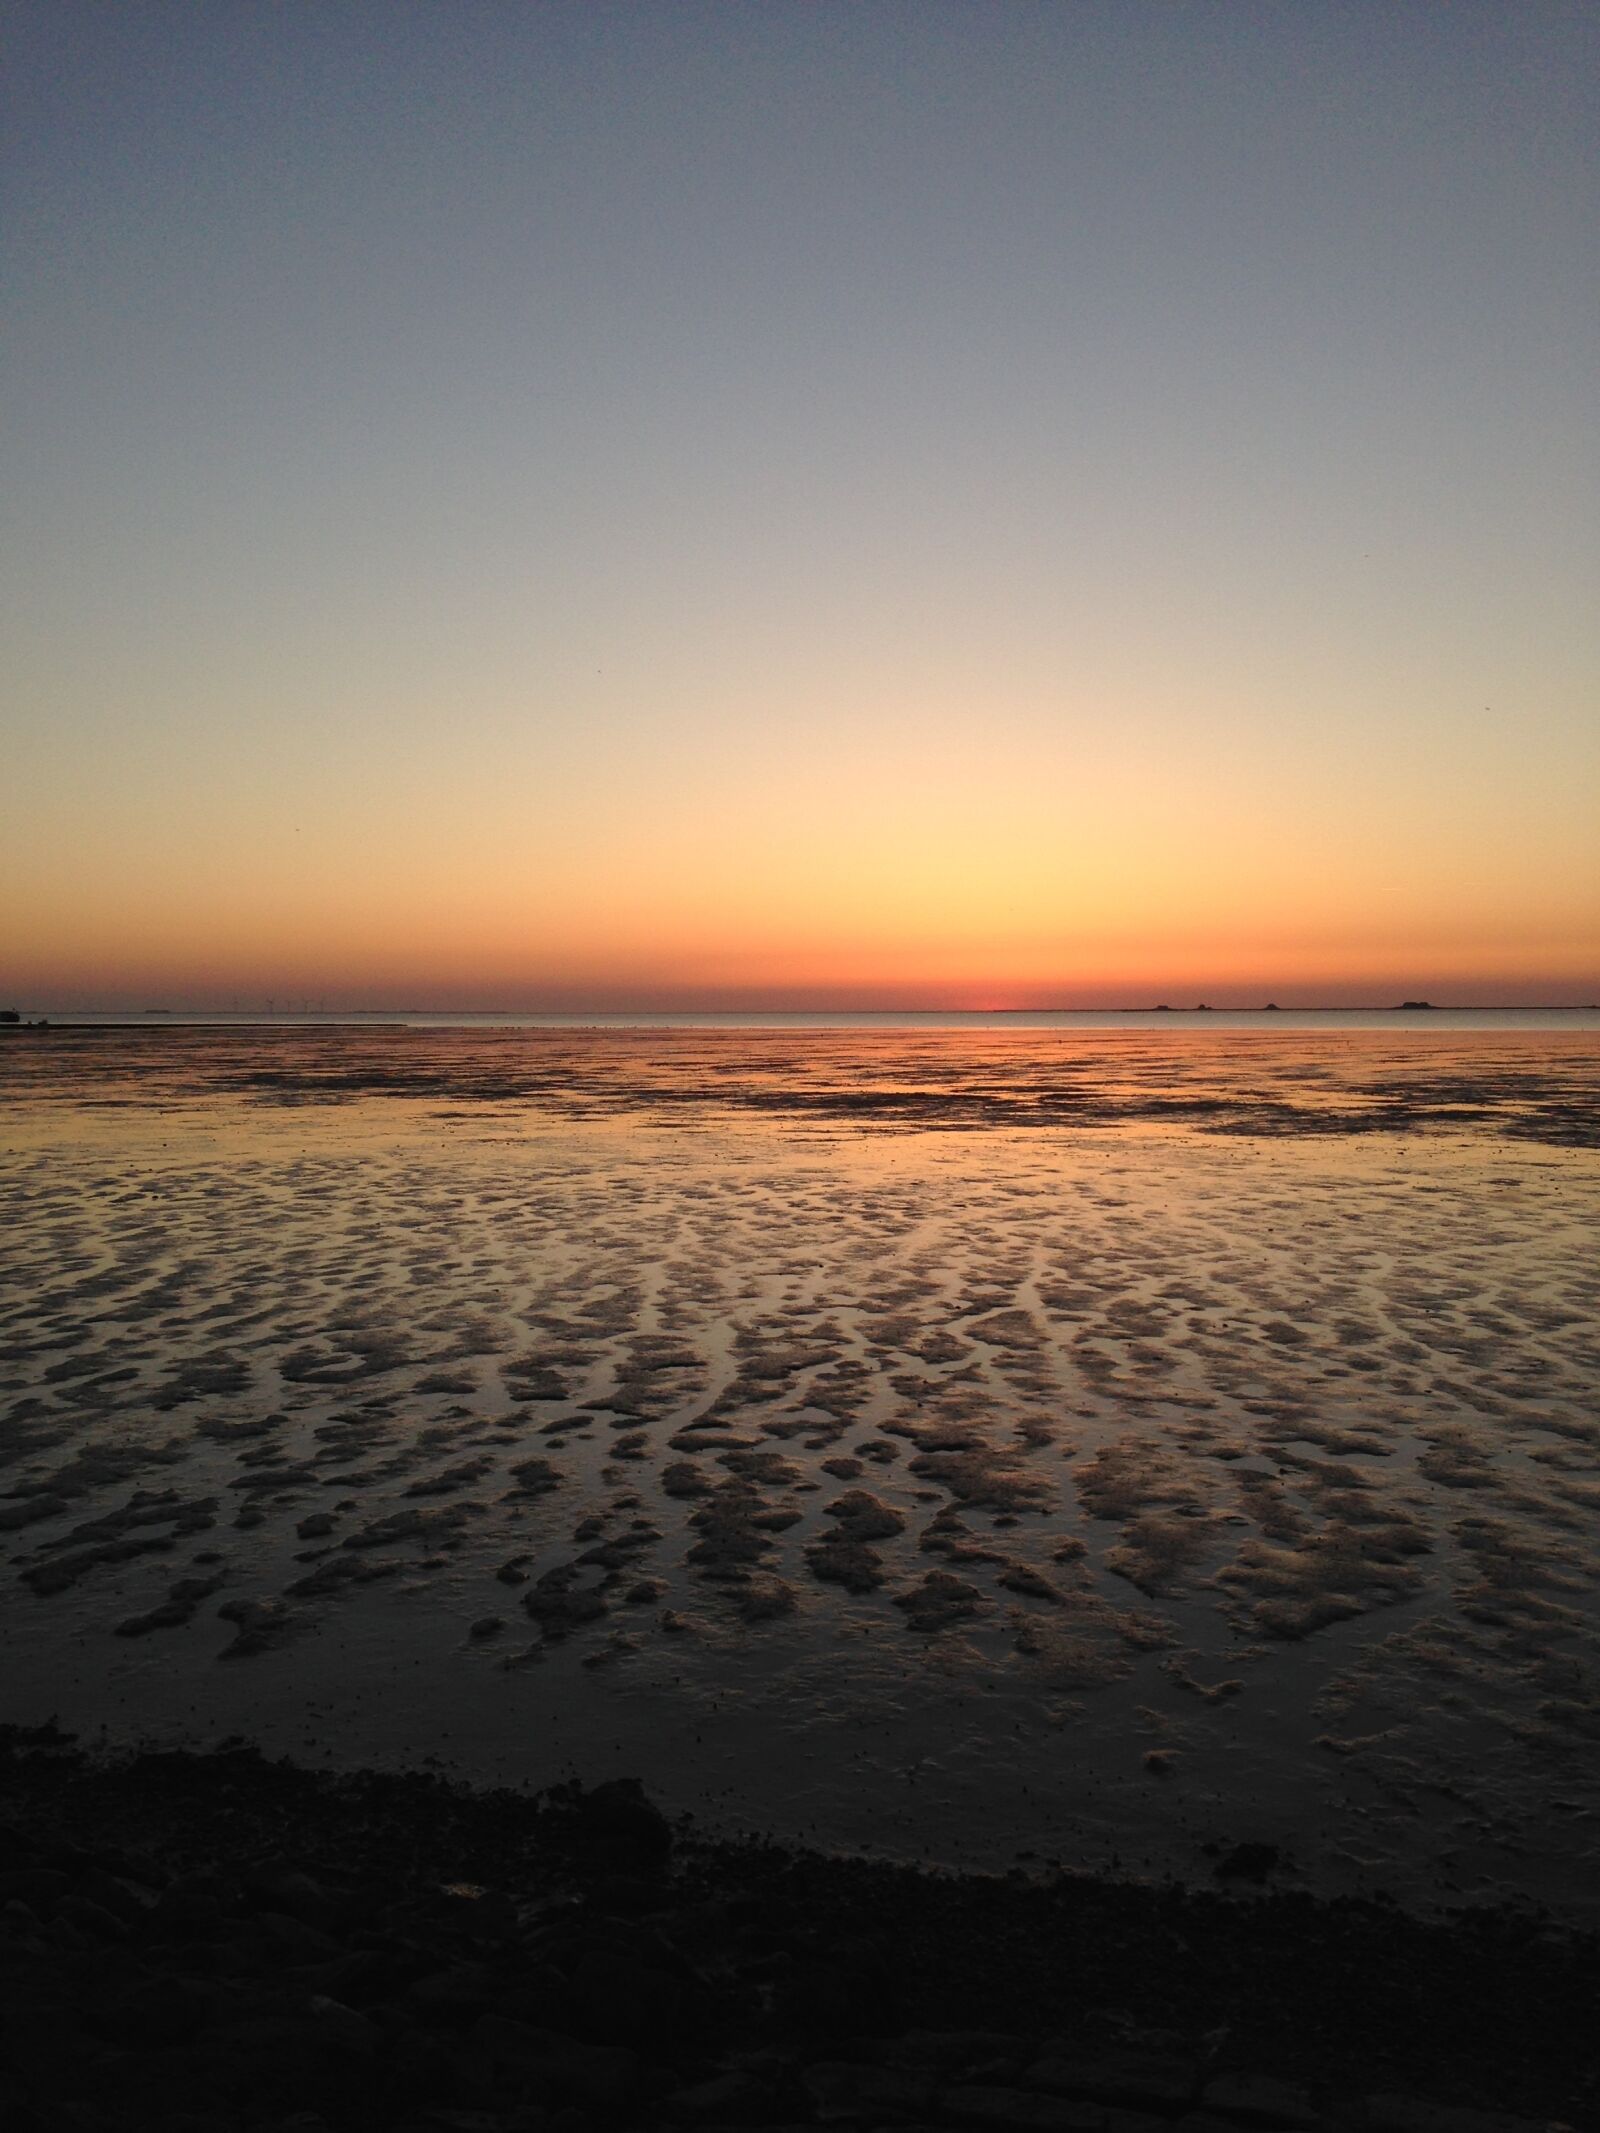 Apple iPhone 5 sample photo. Sunset, sea, watts photography